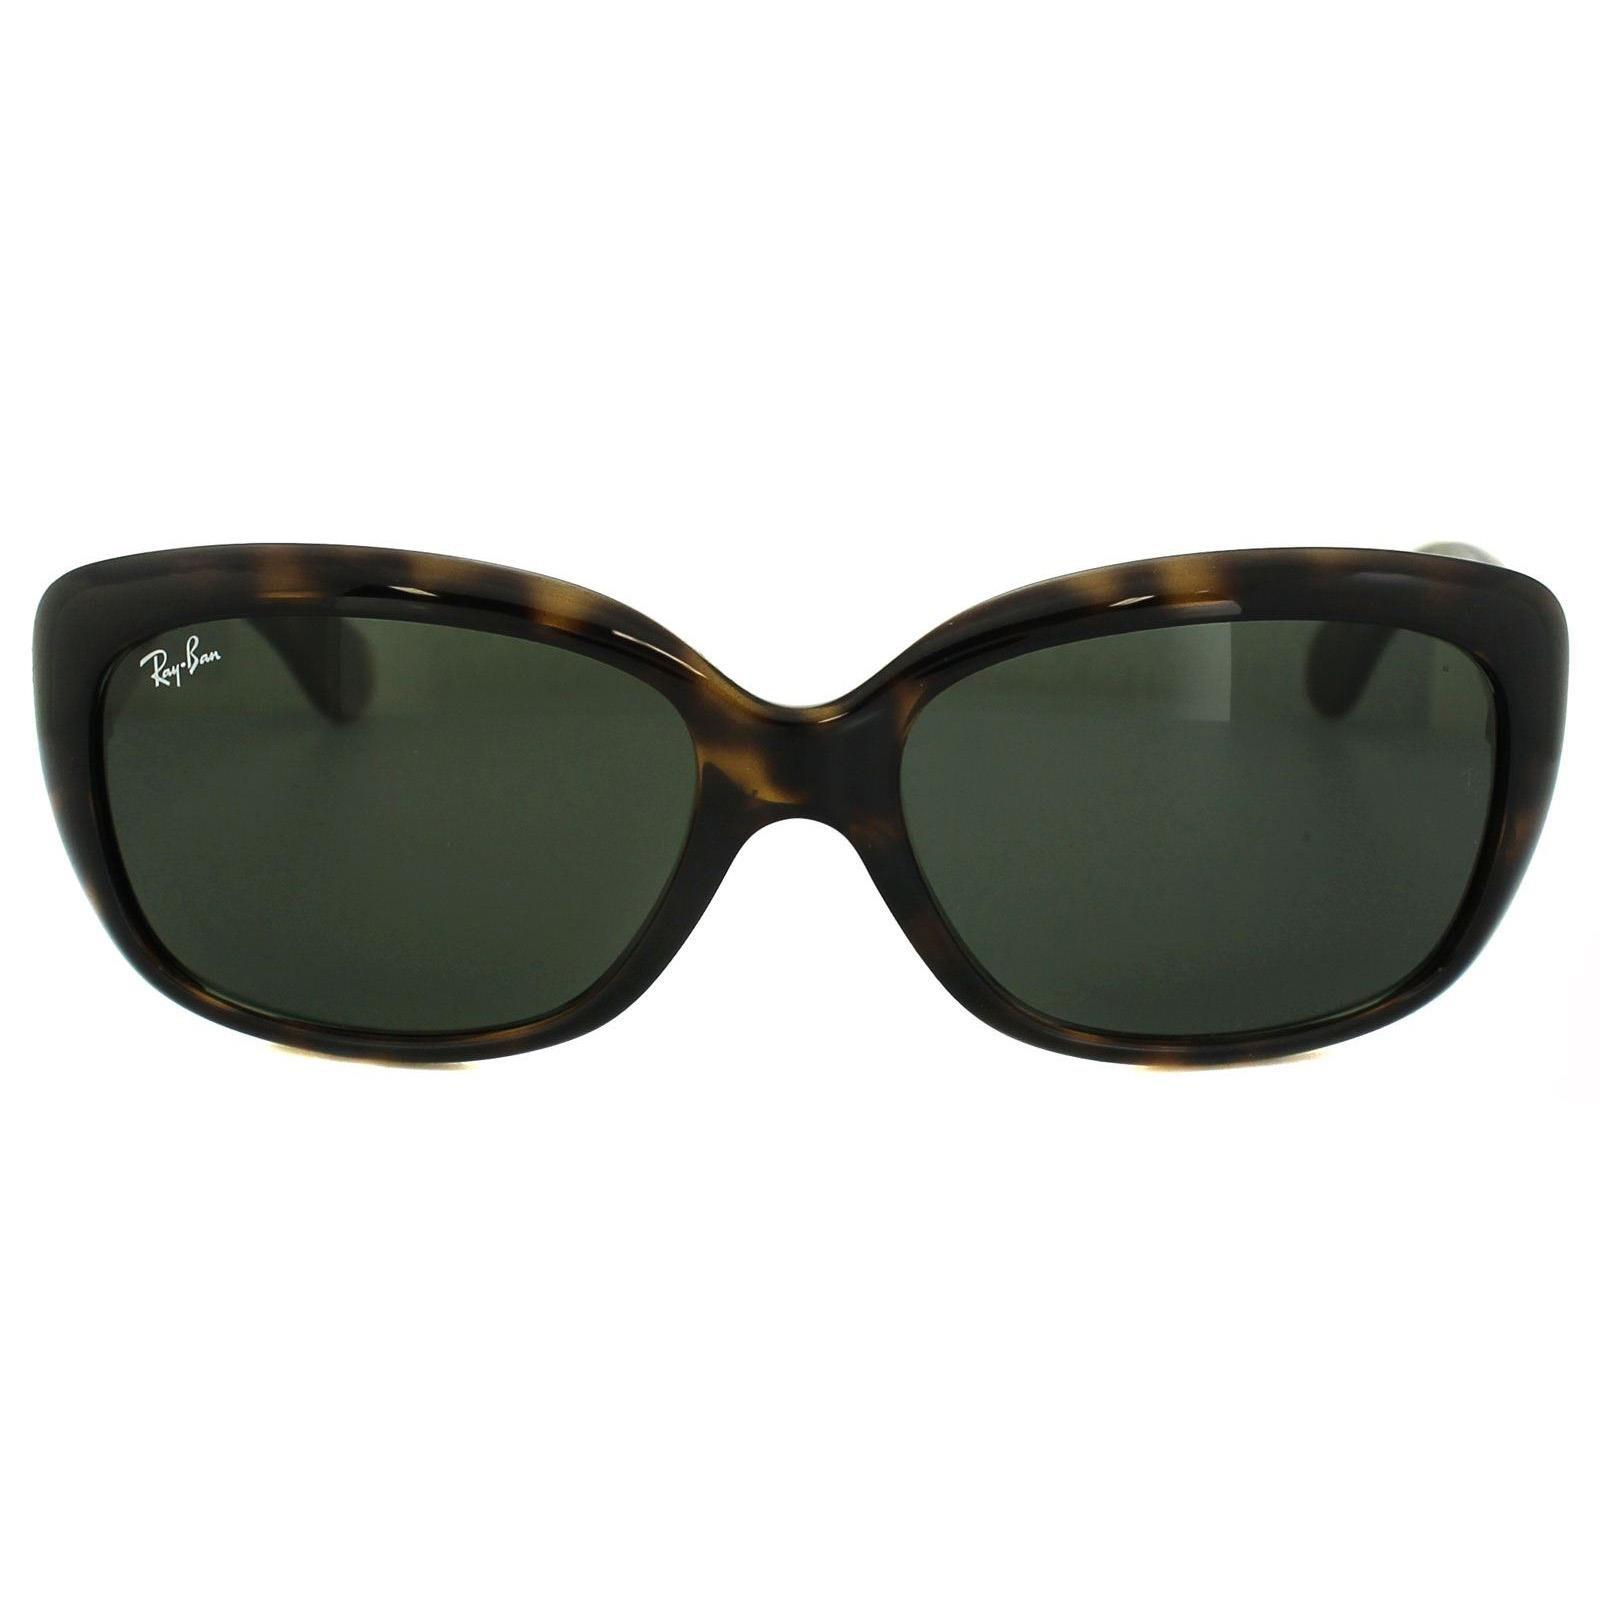 Зеленые солнцезащитные очки Butterfly Havana Ray-Ban, коричневый